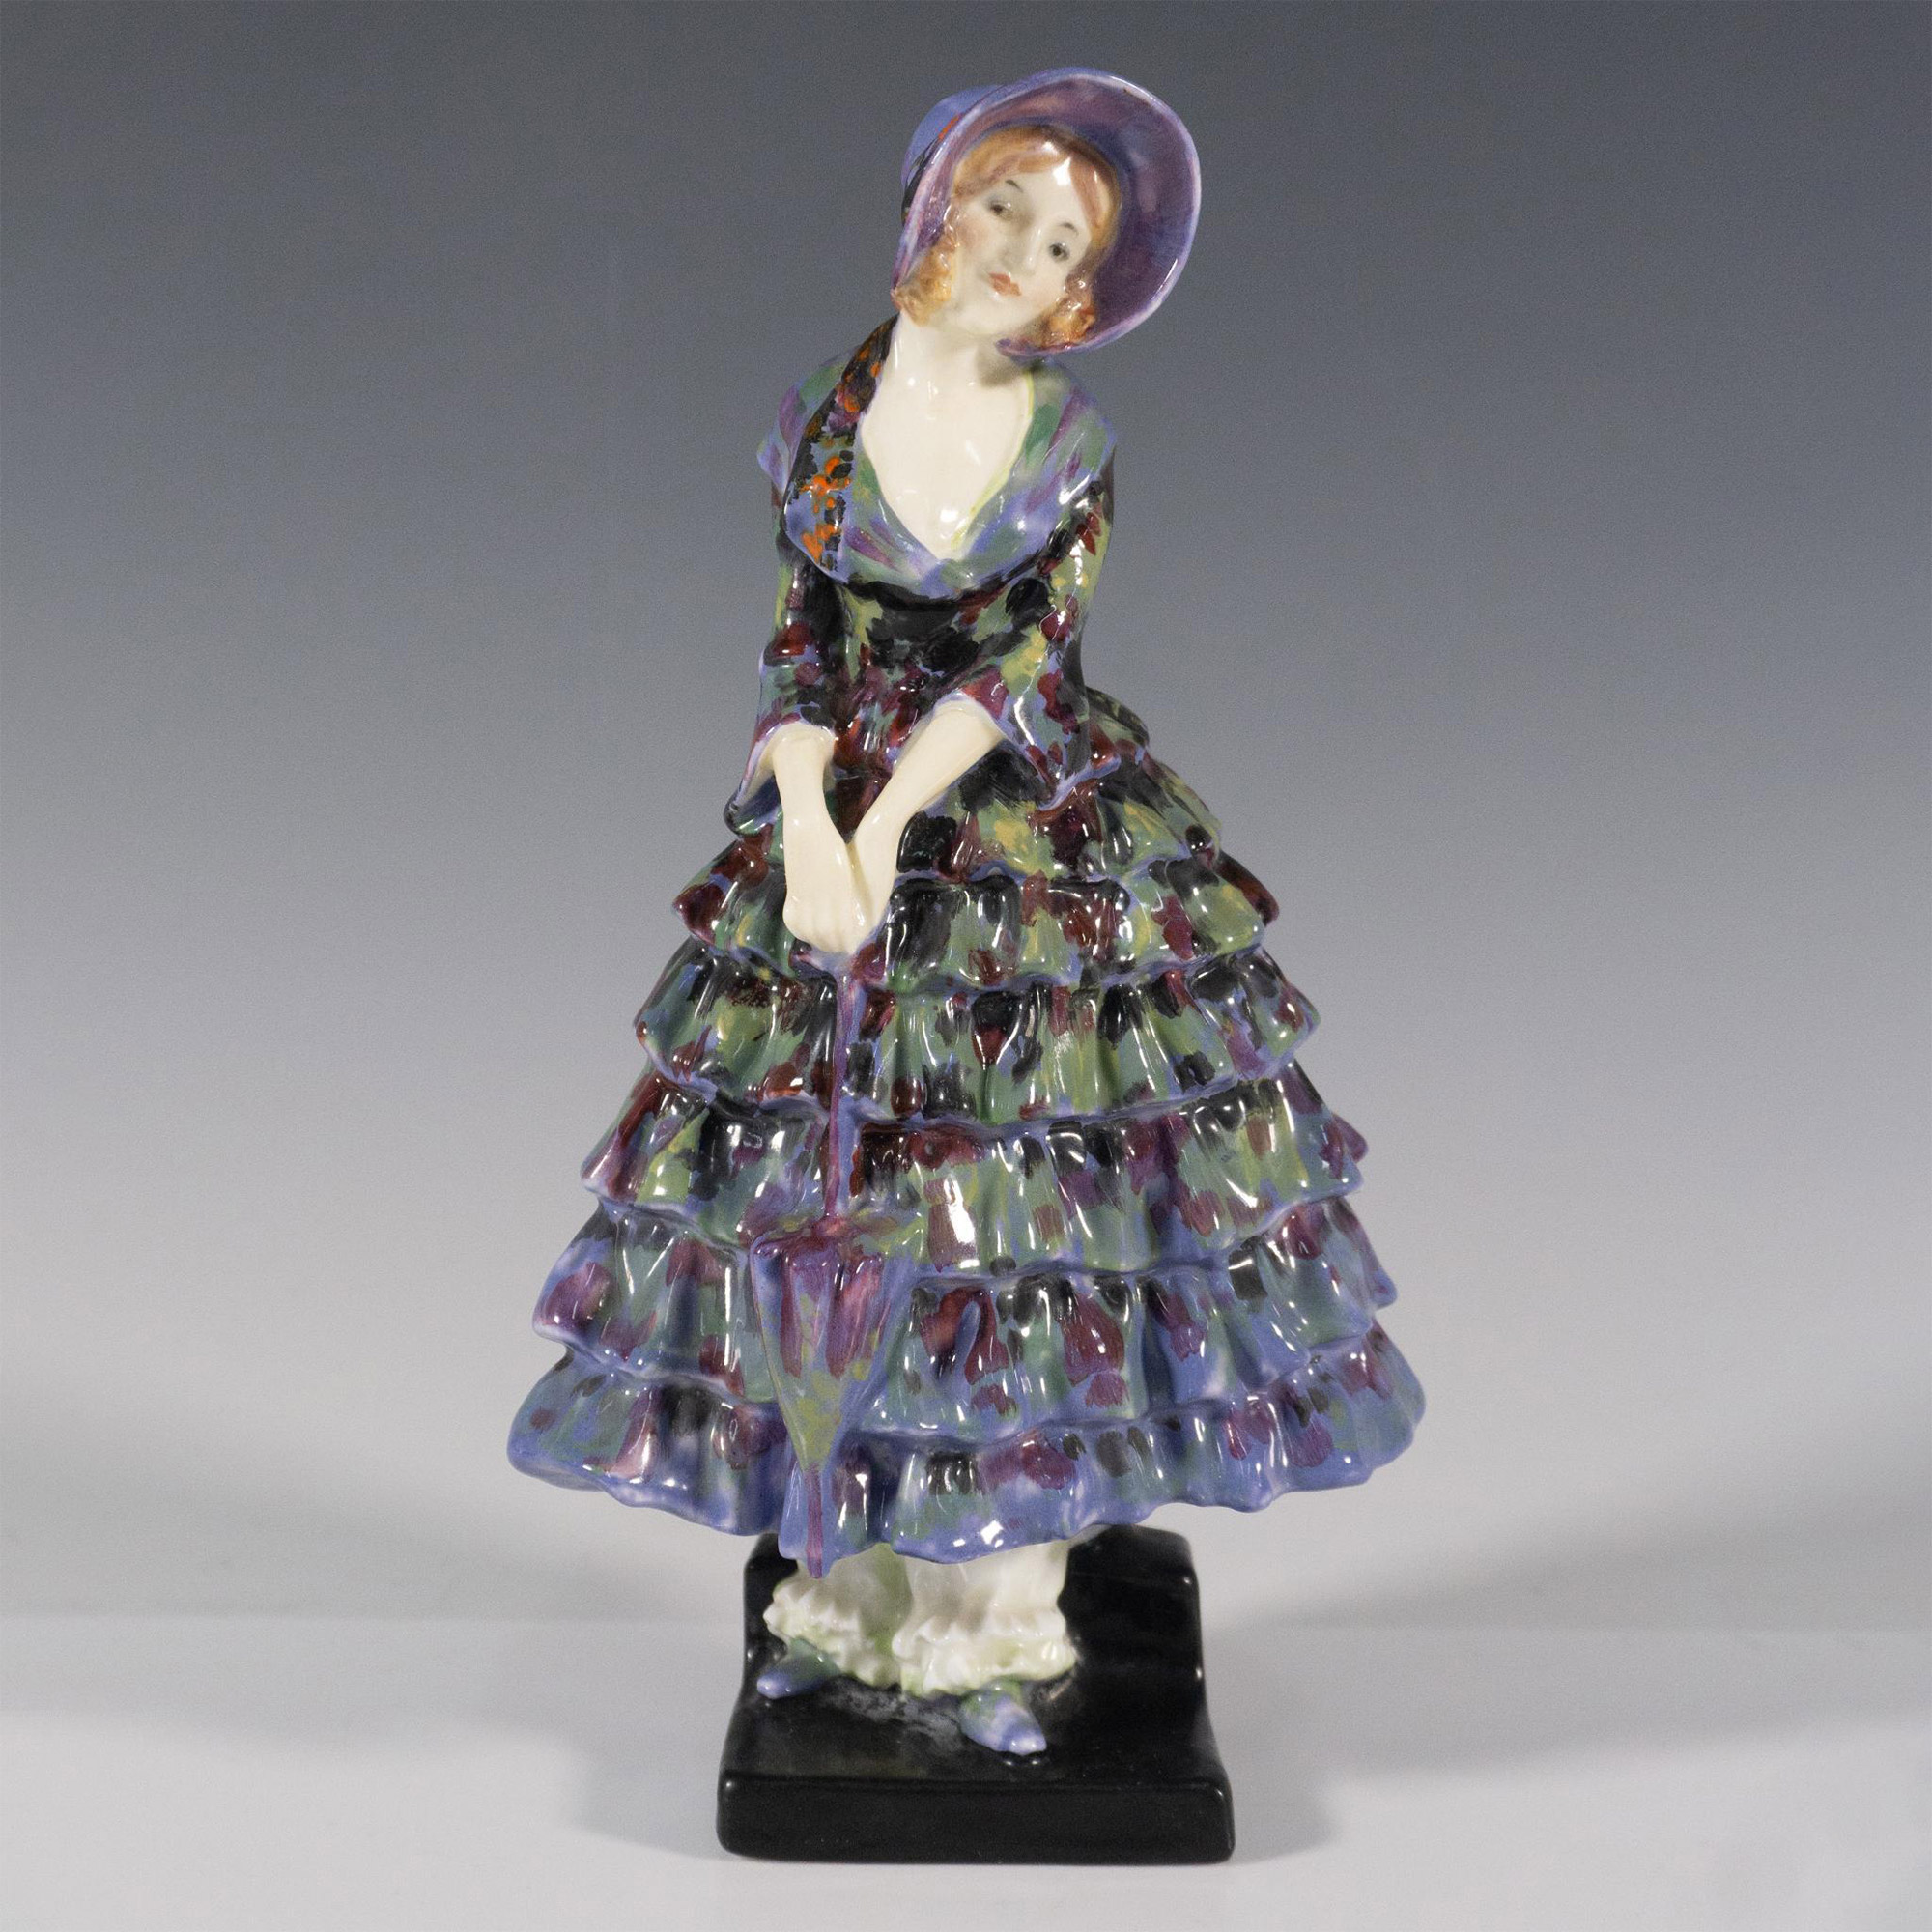 Priscilla Rare Unique Colorway - Royal Doulton Figurine